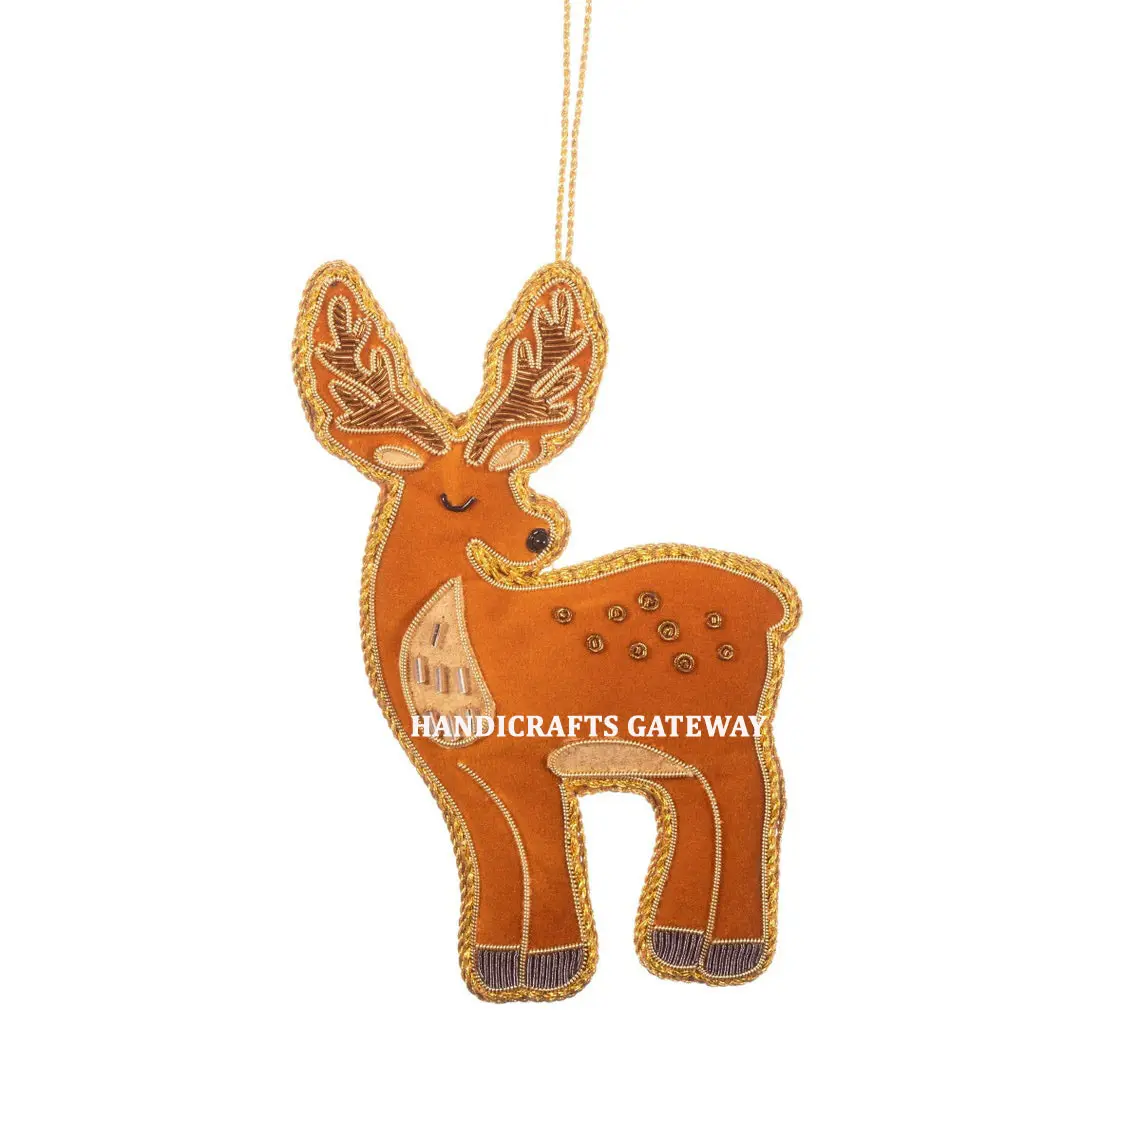 プレミアム品質のゴージャスな高級ザリ刺Embroidery鹿の形クリスマスハンギングオーナメントアクセサリー木の装飾用